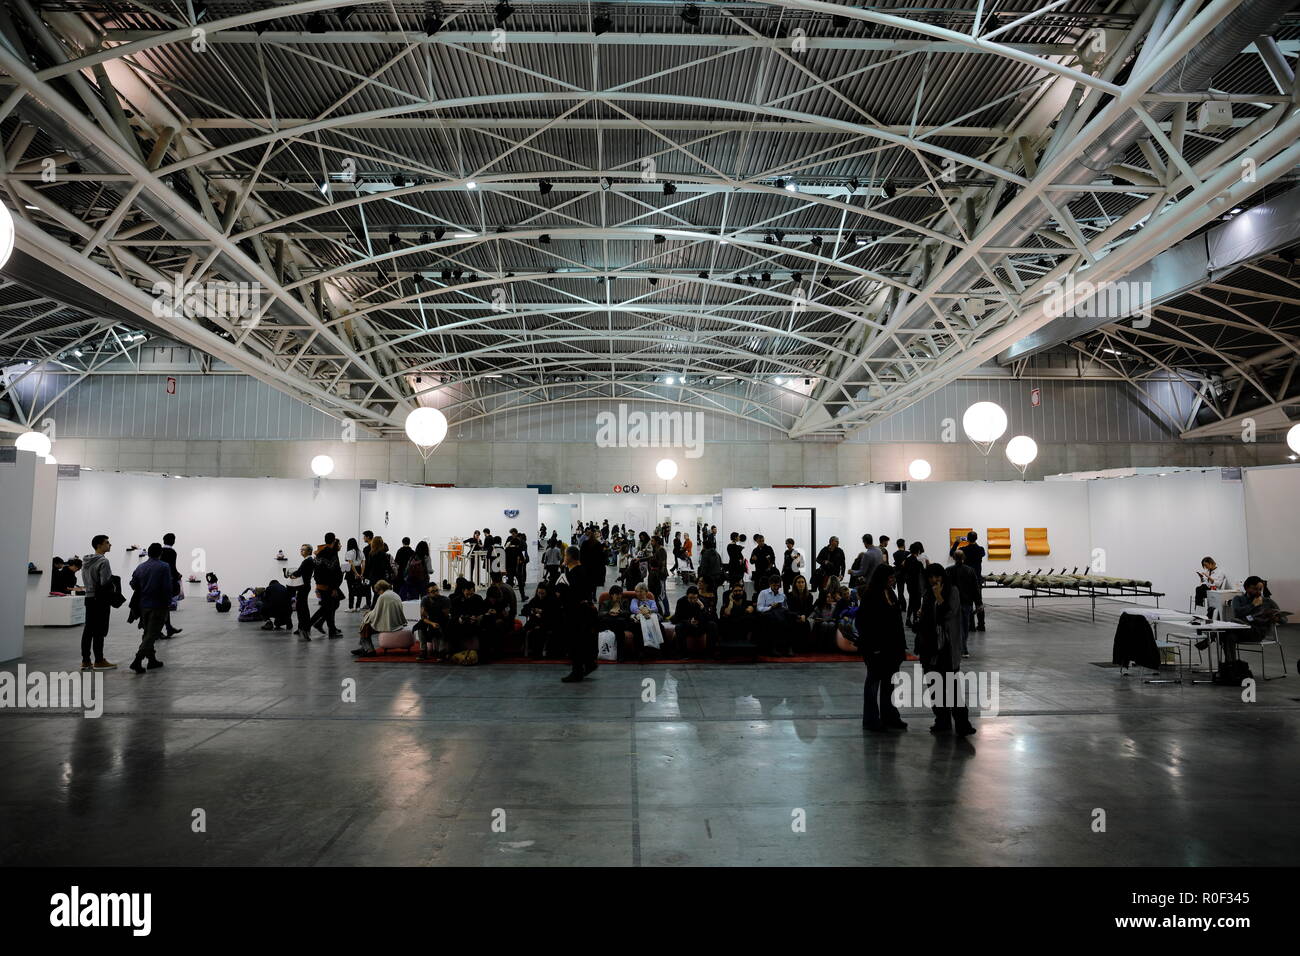 Turin, Italie. 4 novembre, 2018. Personnes visitent Artissima, la plus importante foire d'art contemporain en Italie, situé dans la région de Oval Lingotto Fiere, Torino. MLBARIONA/Alamy Live News Banque D'Images